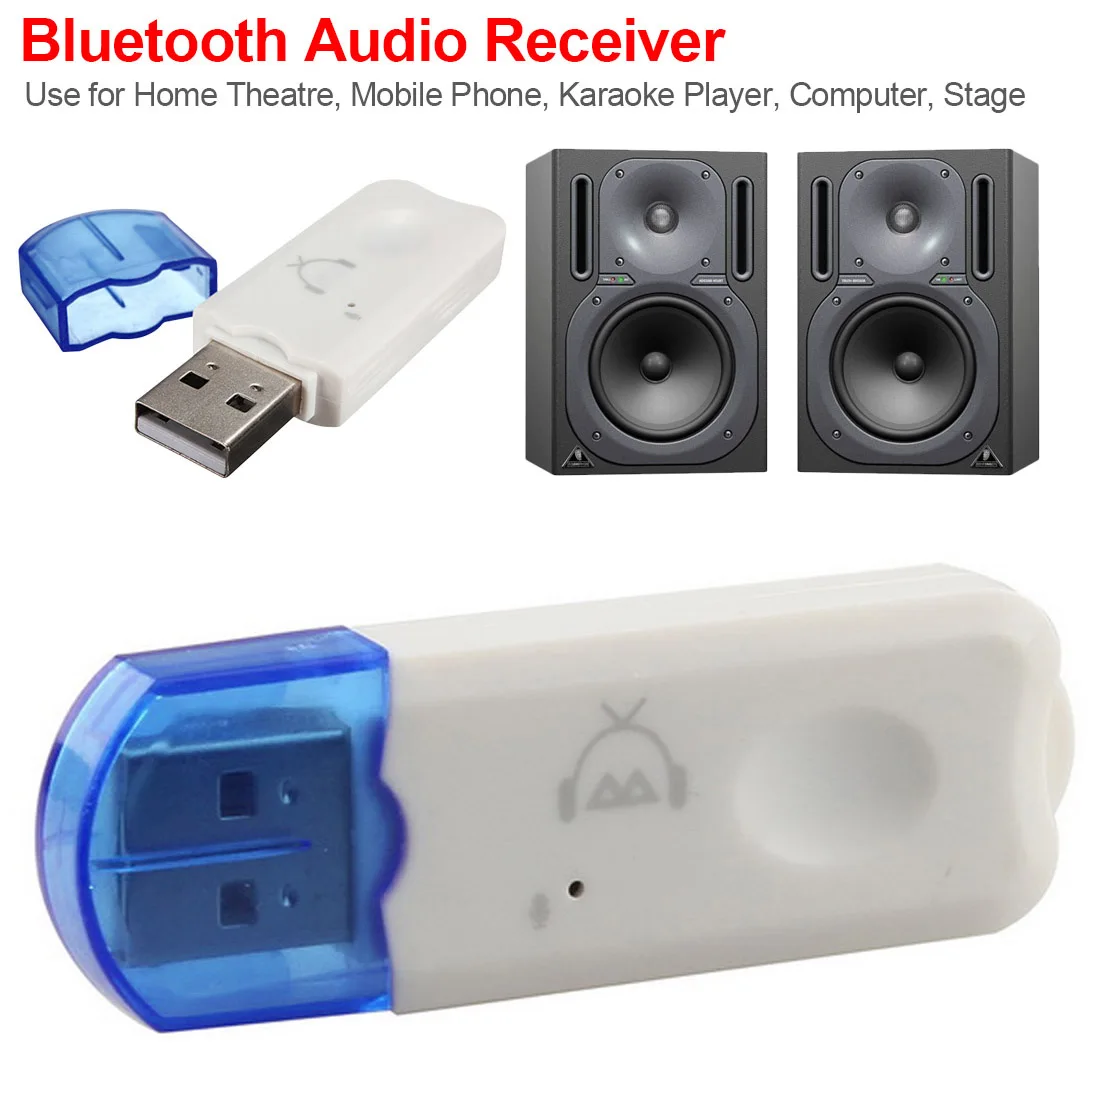 Vococal Portatile USB Bluetooth 2.1 Adattatore Dongle Musica Audio Stereo Ricevitore con Cavo Audio da 3,5 mm per Sistemi Audio Casa Stereo Altoparlanti Cuffie Auto Musica 